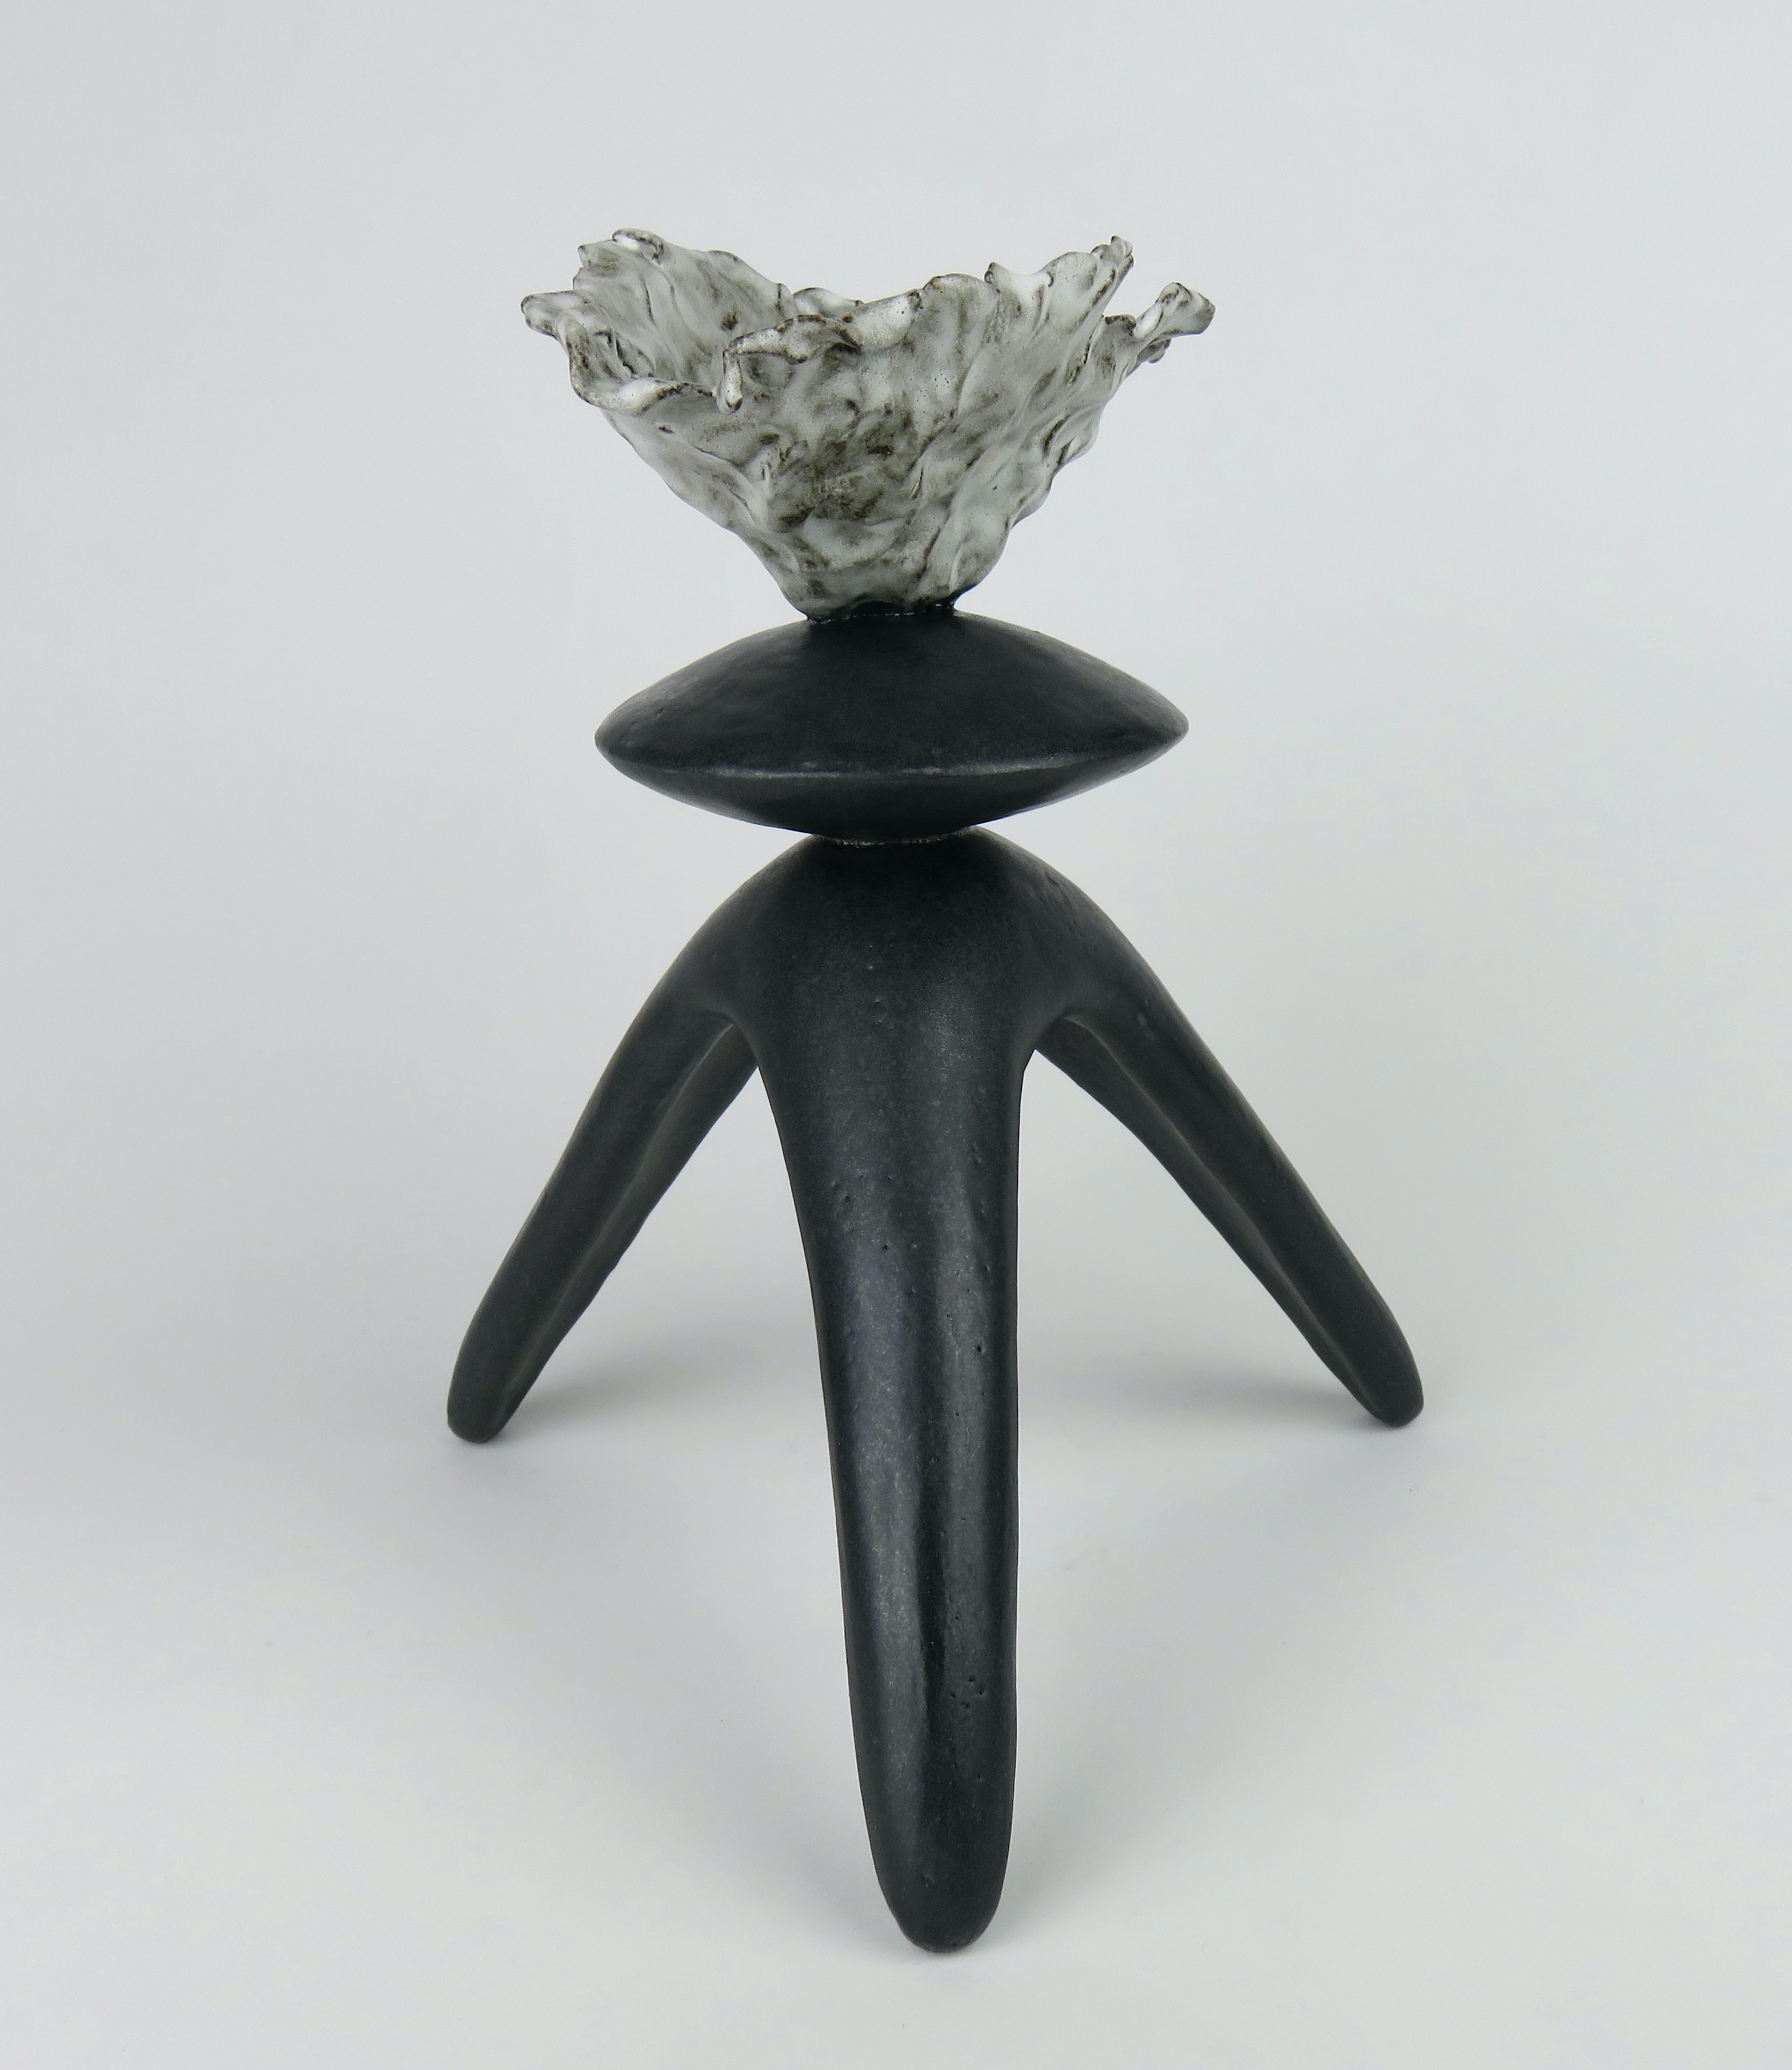 Ce TOTEM moderne en céramique émaillée noire fabriqué à la main se compose d'un sommet ouvert de forme libre avec une forme sphérique centrale sur des pieds tripodes. Fait partie d'une série d'œuvres totémiques modernes. 
L'argile en grès brun